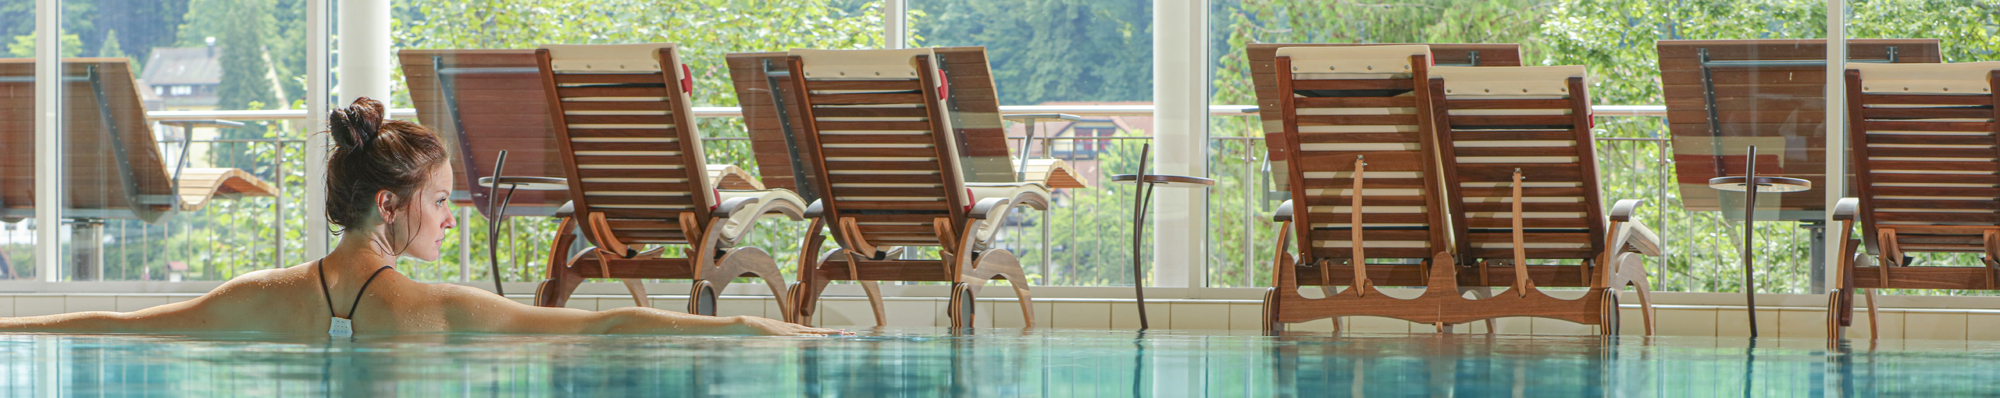 Eine Frau nimmt ein Bad im SPA, Wellness, Pool Bereich, vor Liegestühlen und grüner Kulisse im Hotel Schwarzwald Panorama.